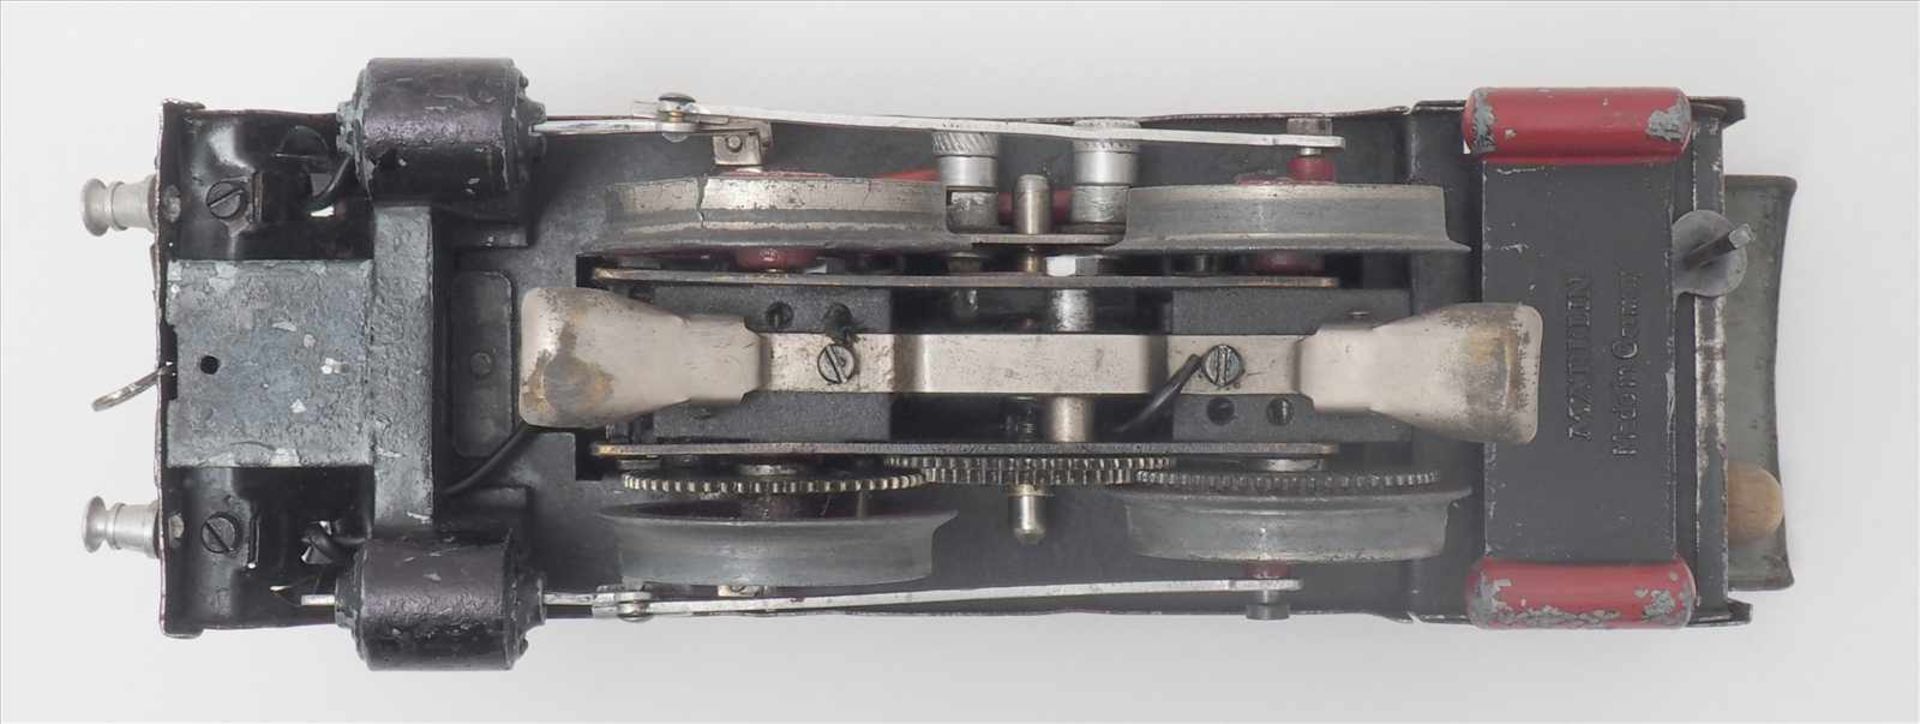 Märklin DampflokSpur 0, 1930-er Jahre. Elektroantrieb. Zweiachsige Dampflokomotive mit passendem - Bild 6 aus 9